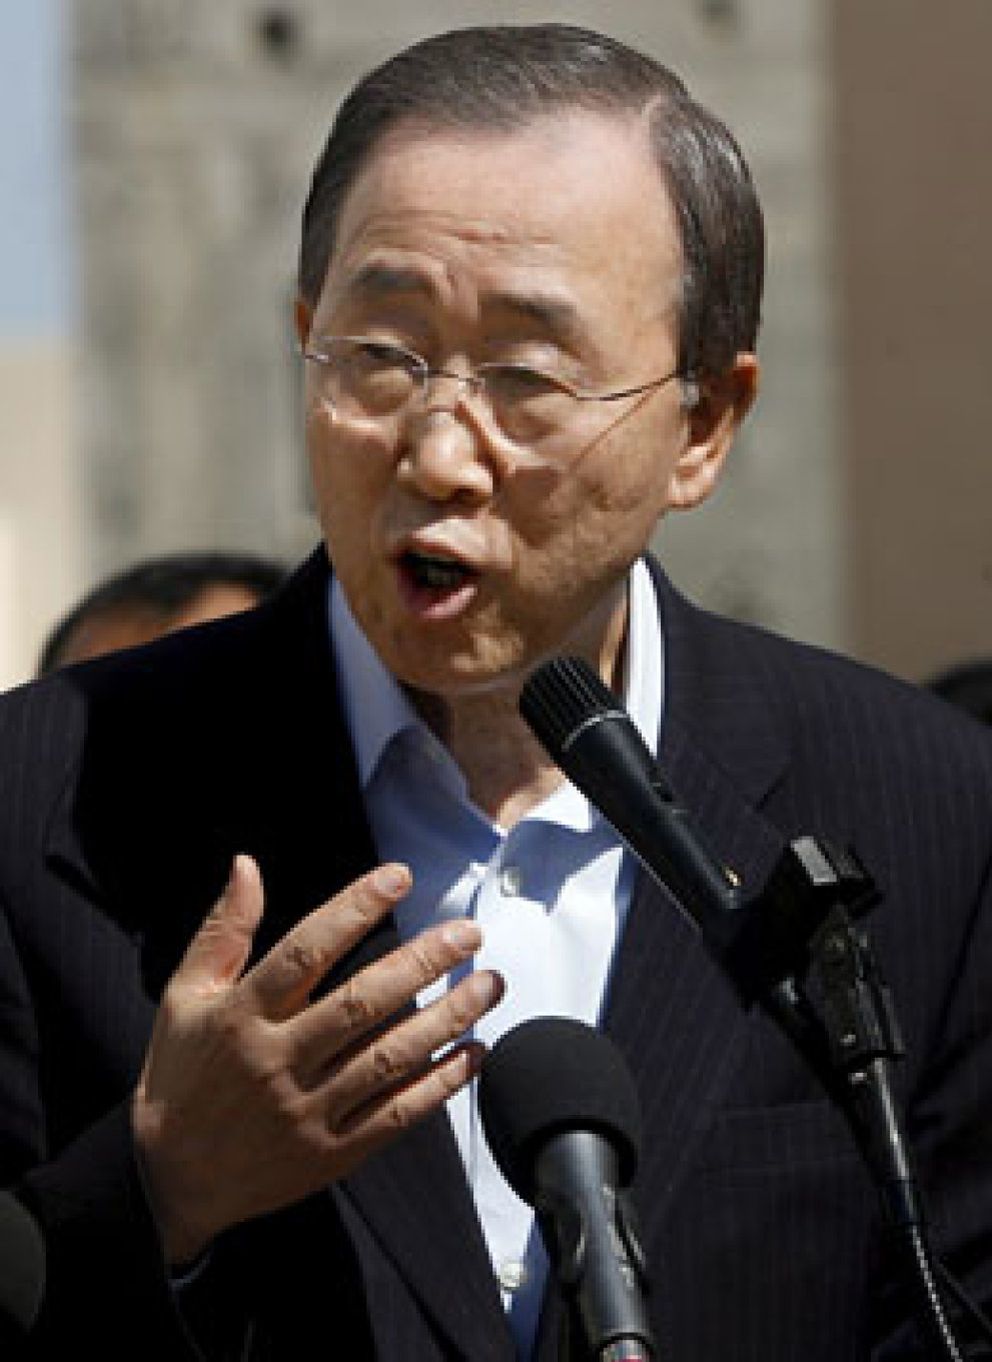 Foto: Ban Ki-moon tilda de "inútil e inaceptable" el bloqueo israelí a Gaza